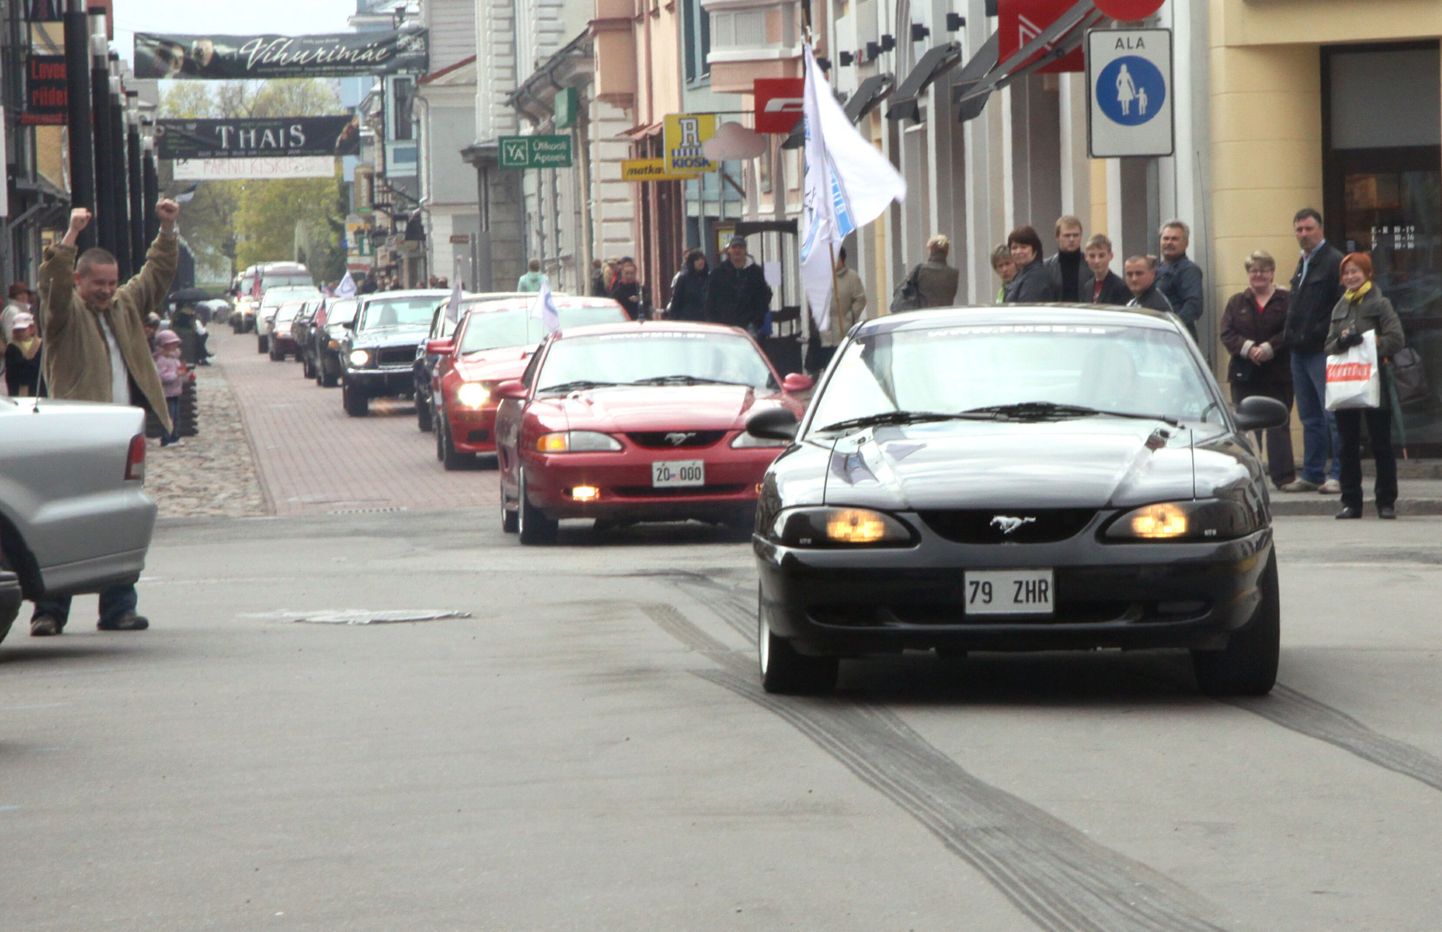 Ameerika autode kruiis läbi Rüütli tänava.